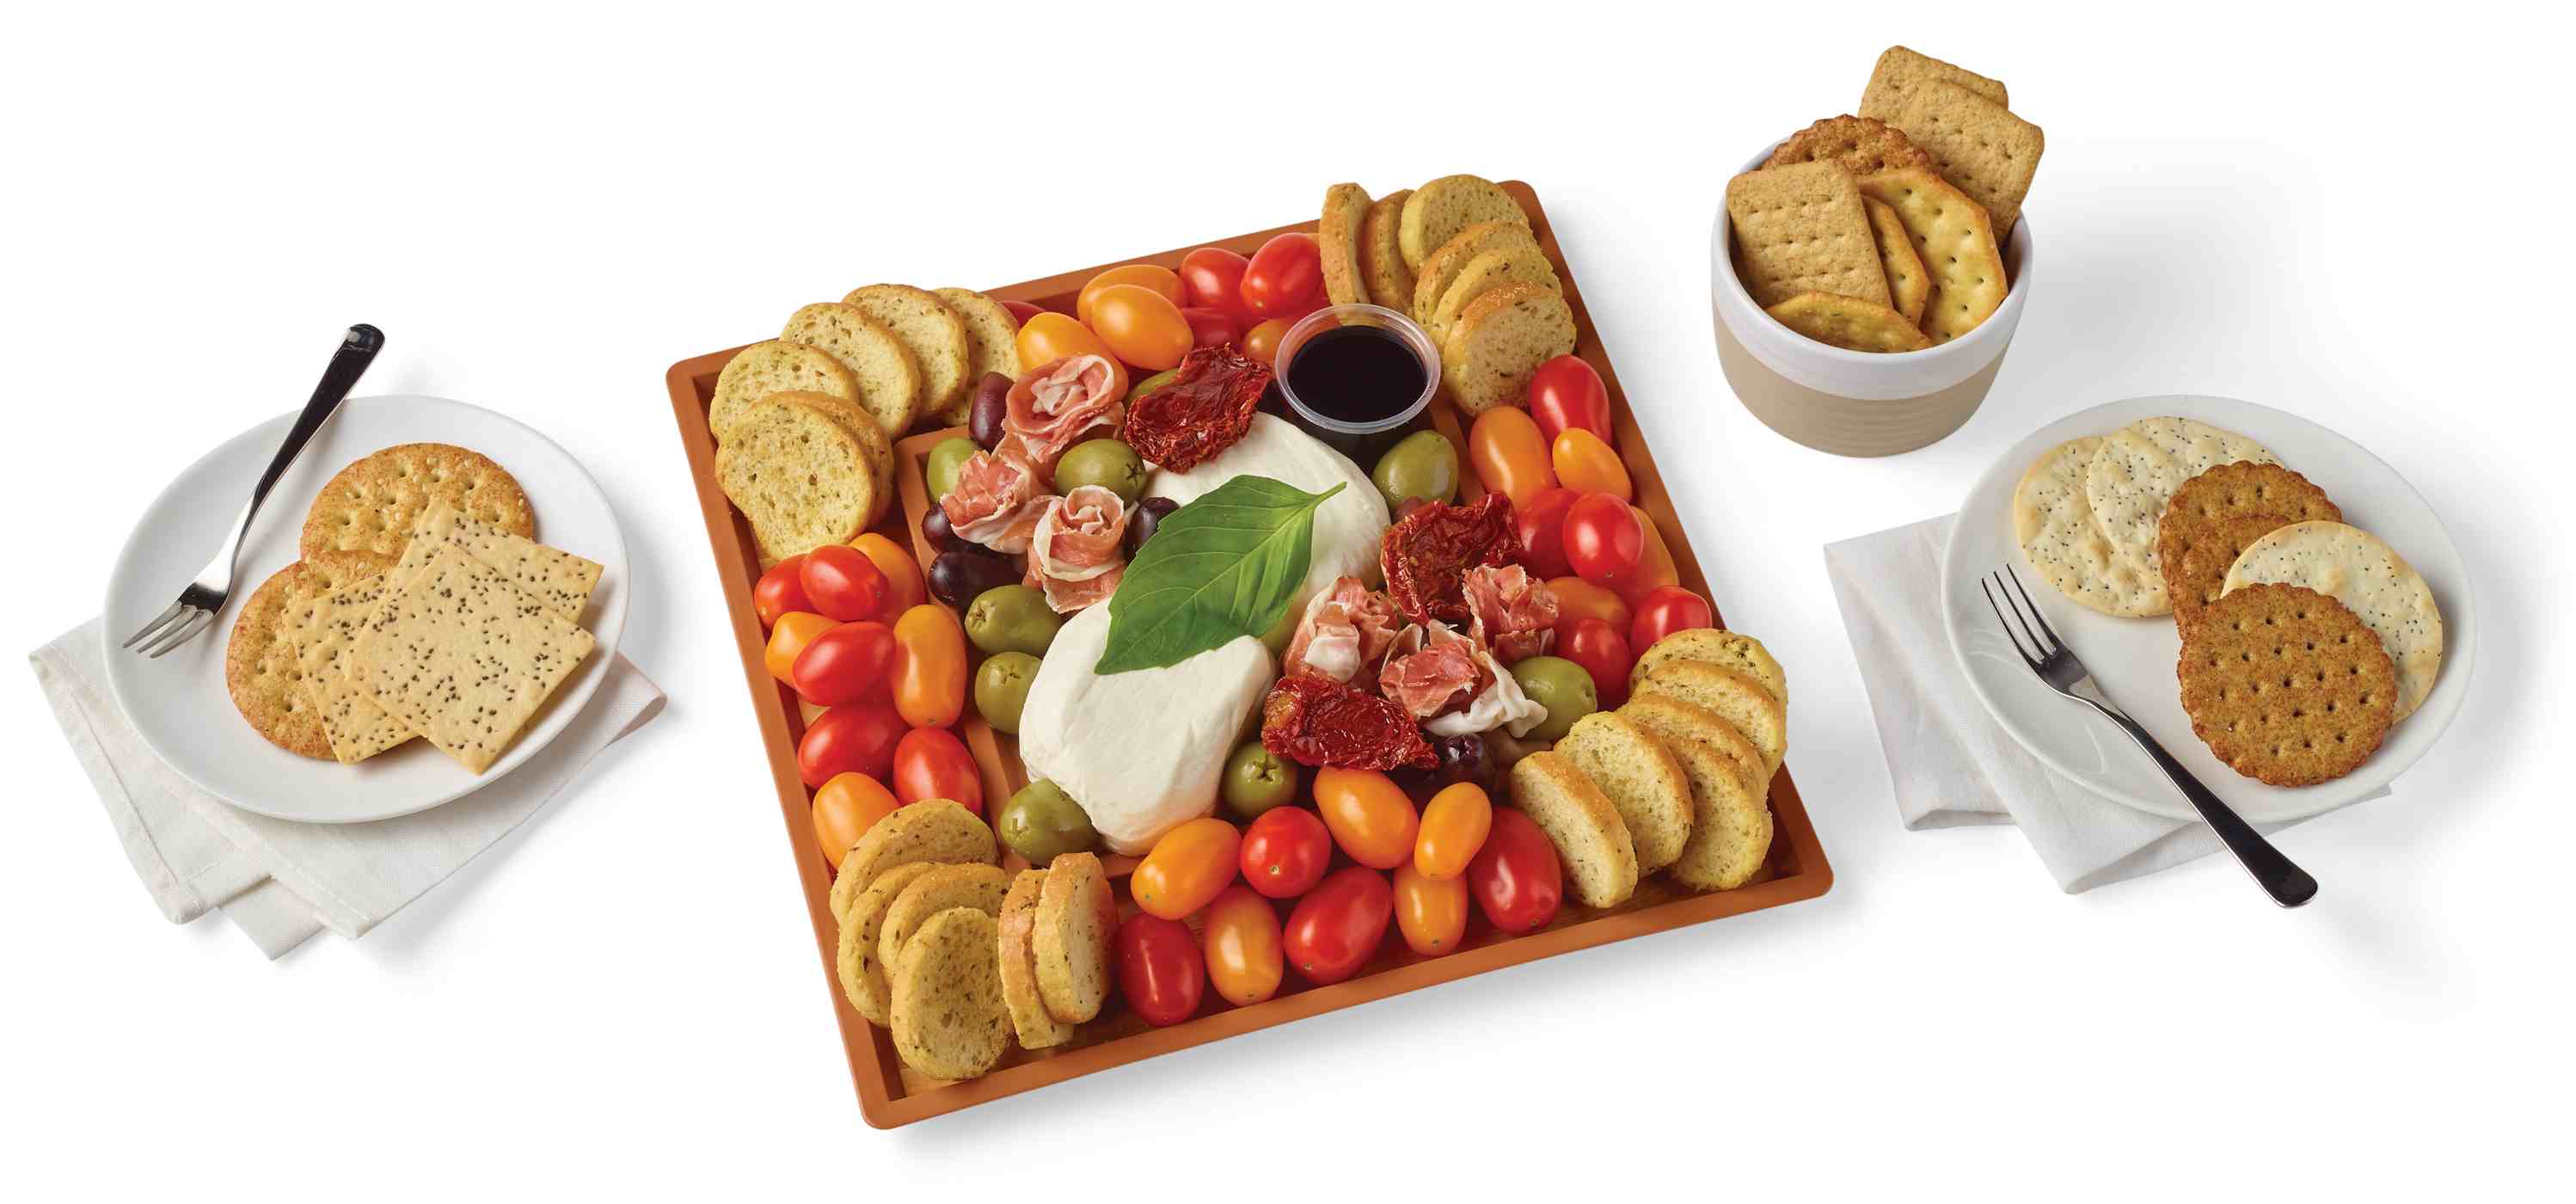 H-E-B Deli Medium Cheese Board - Burrata - Shop Standard Party Trays at ...